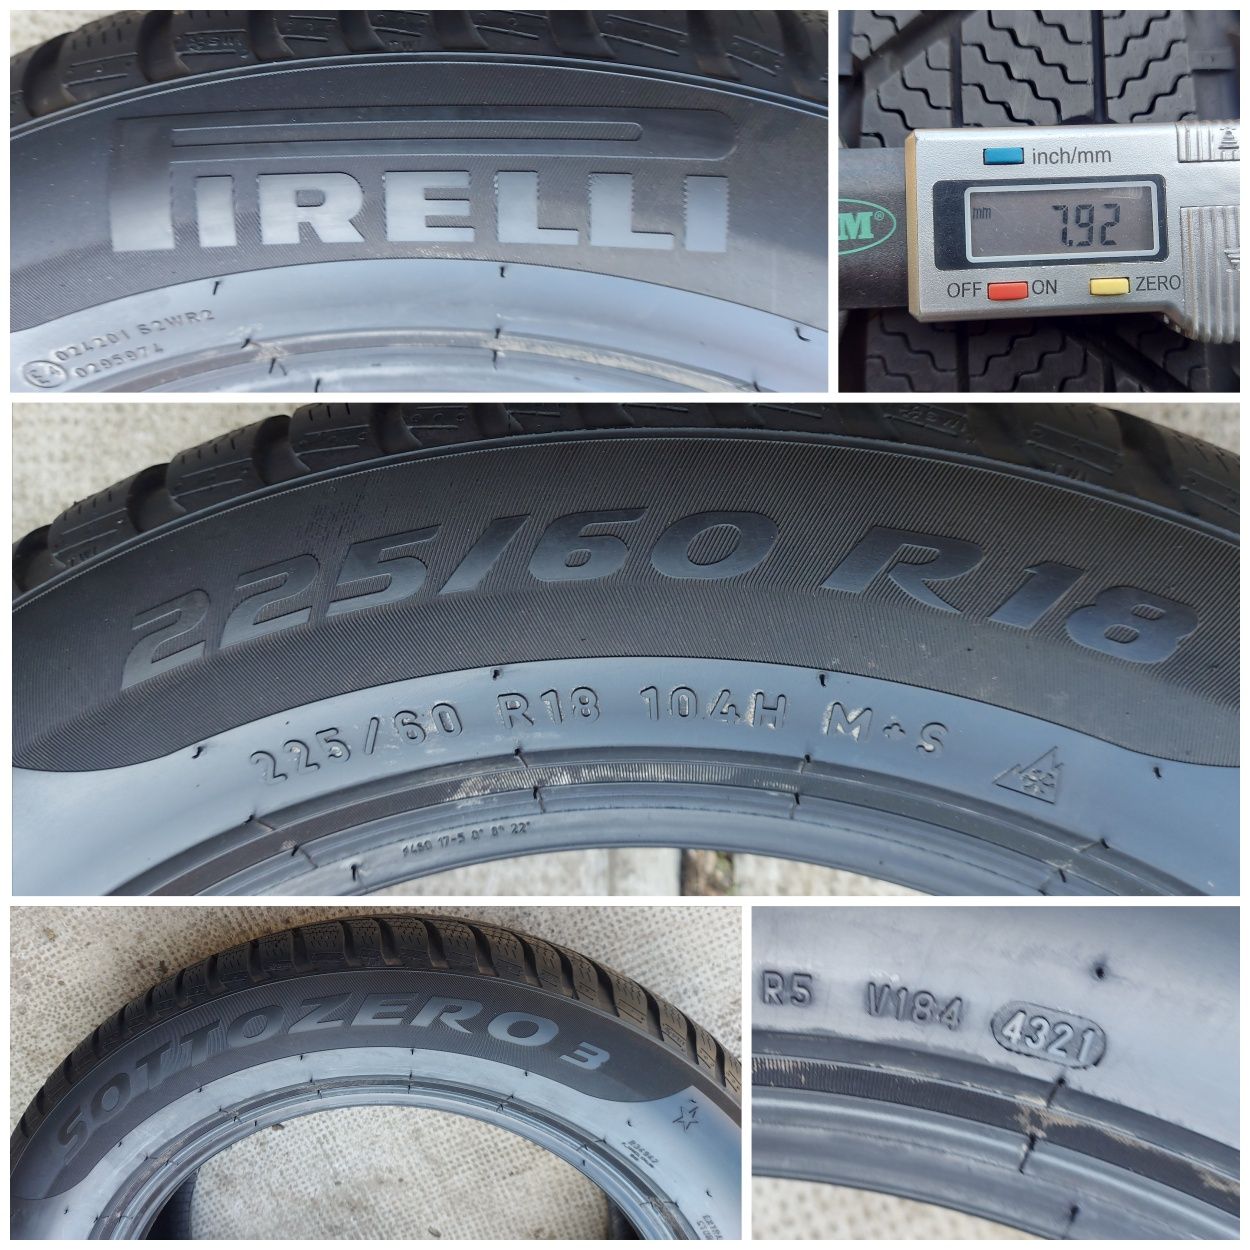 O bucată 235/225 60 R18 M+S iarnă - una Pirelli